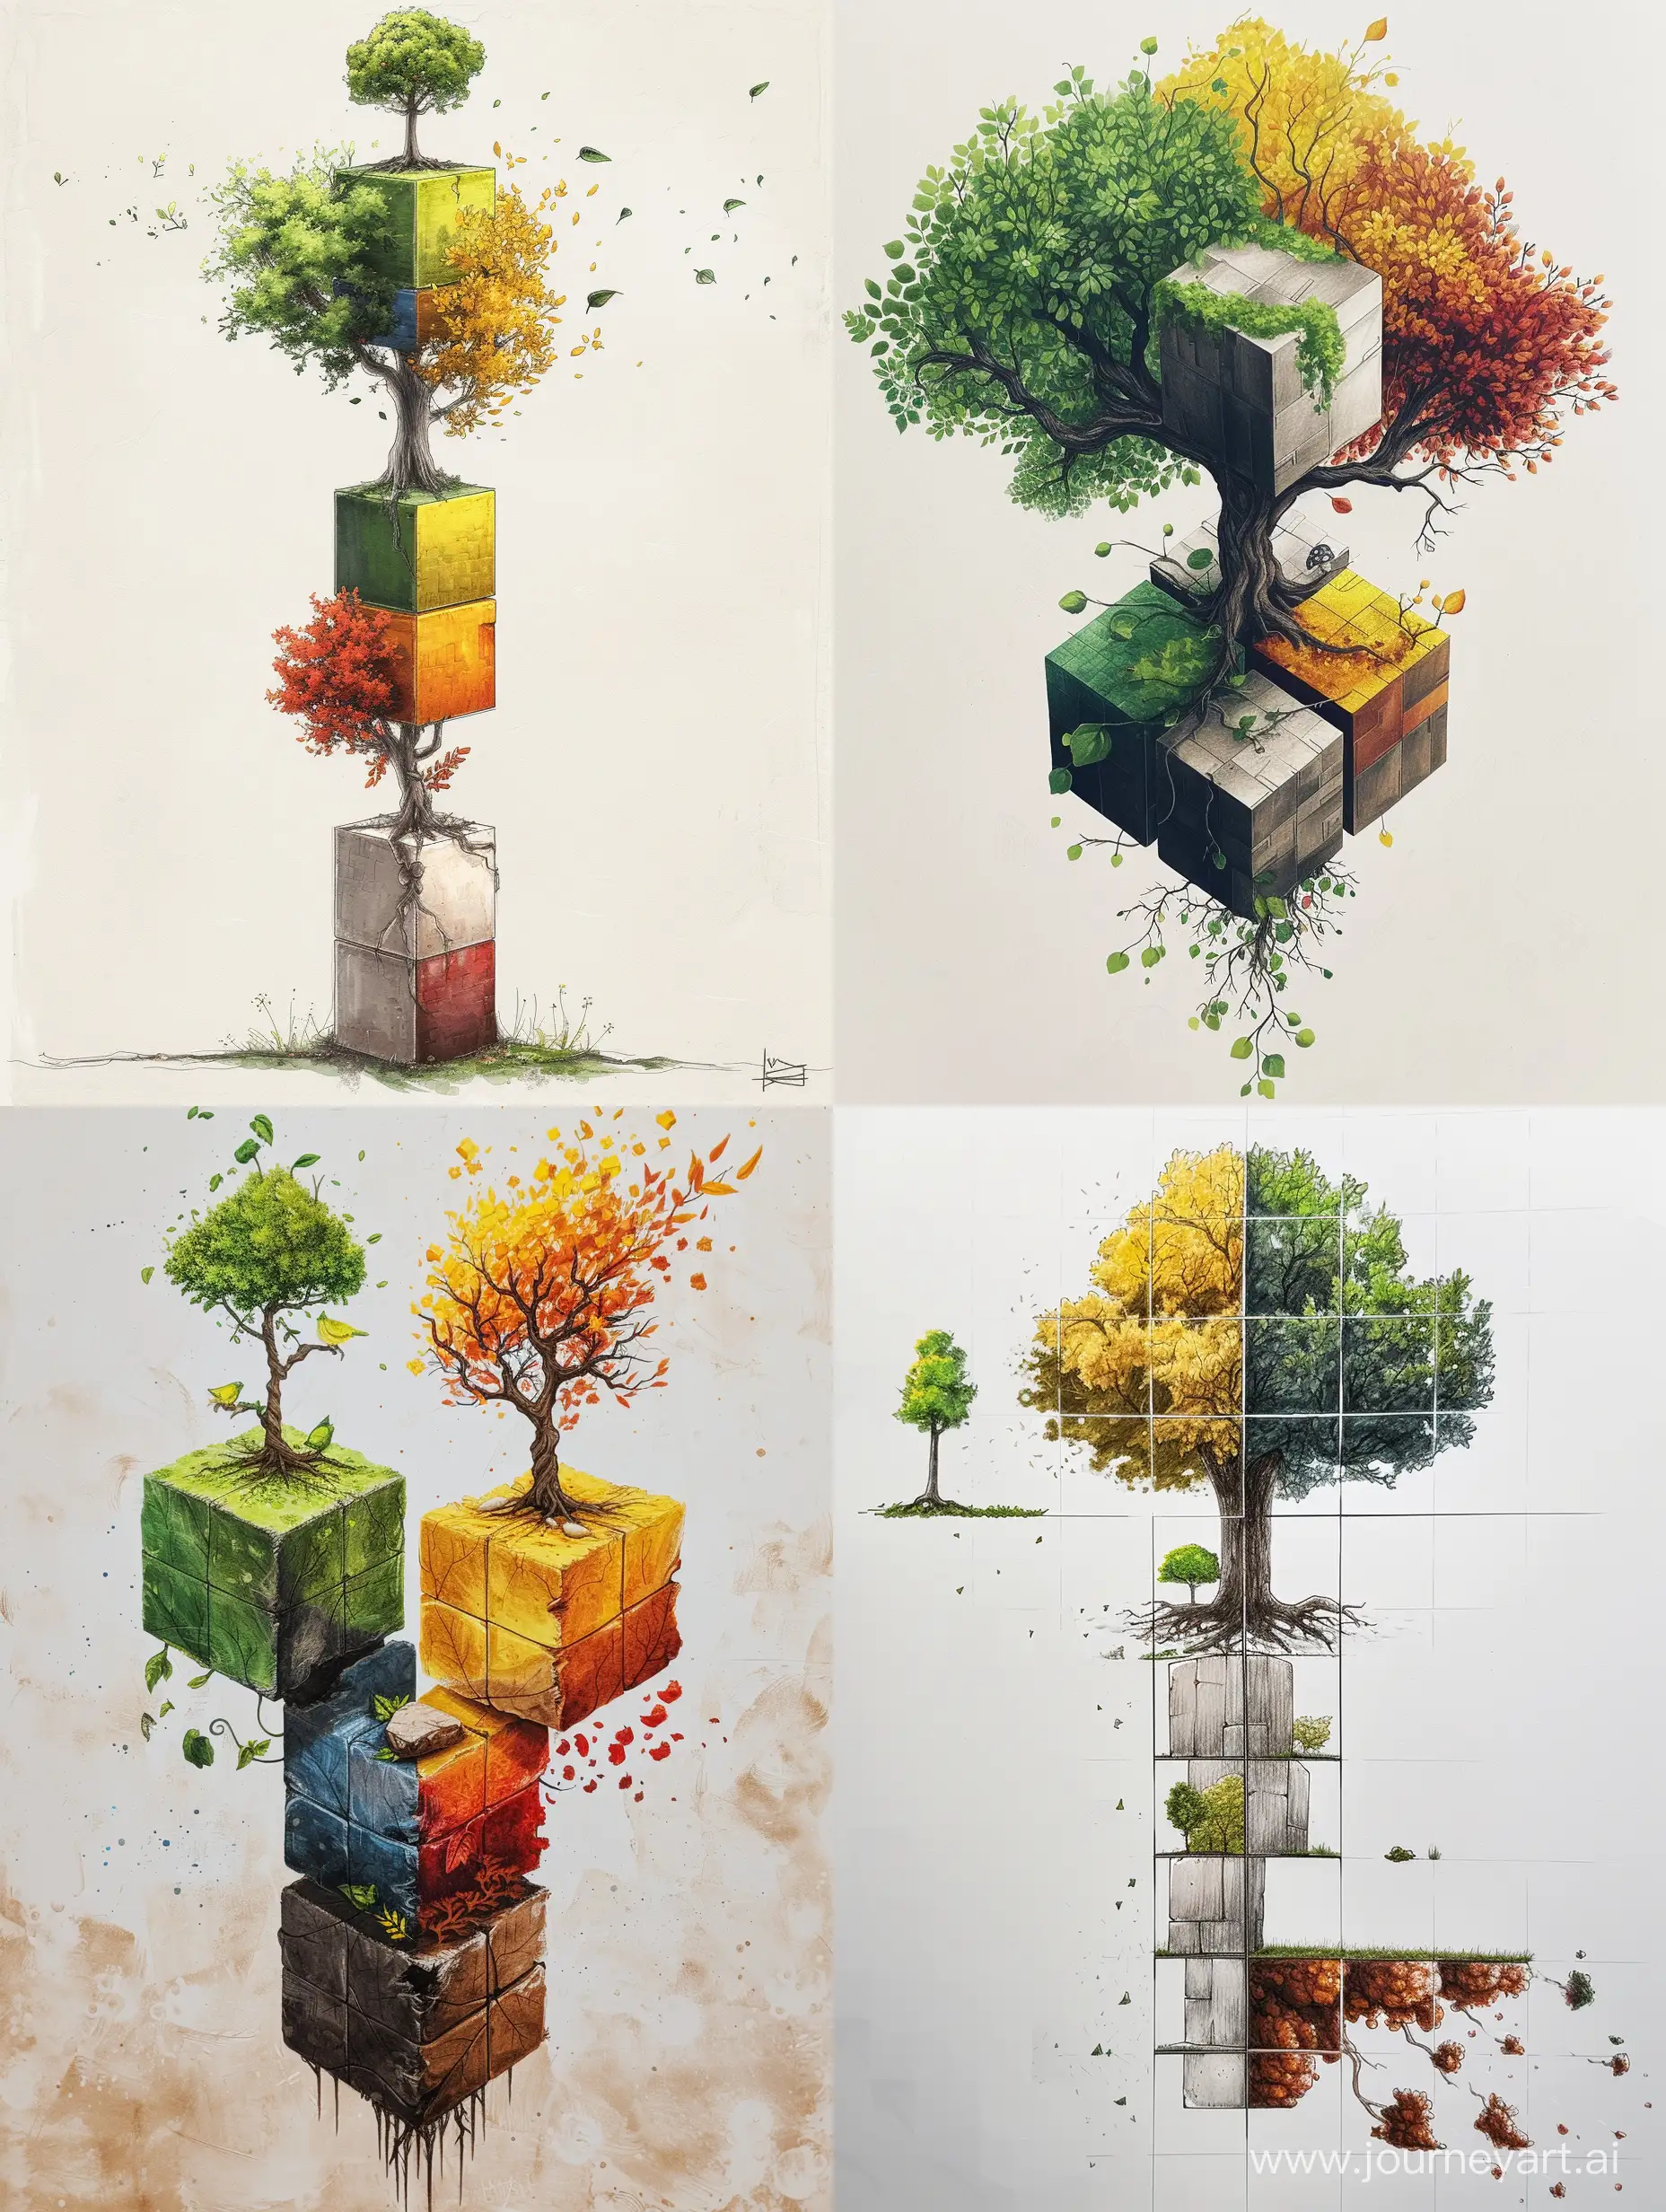 нарисуй дерево из 6 кубов, где на 1 стороне маленькое дерево, на 2  зеленое дерево ,на 3 желто-красное дерево ,на 4 дерево увядает от старости. 